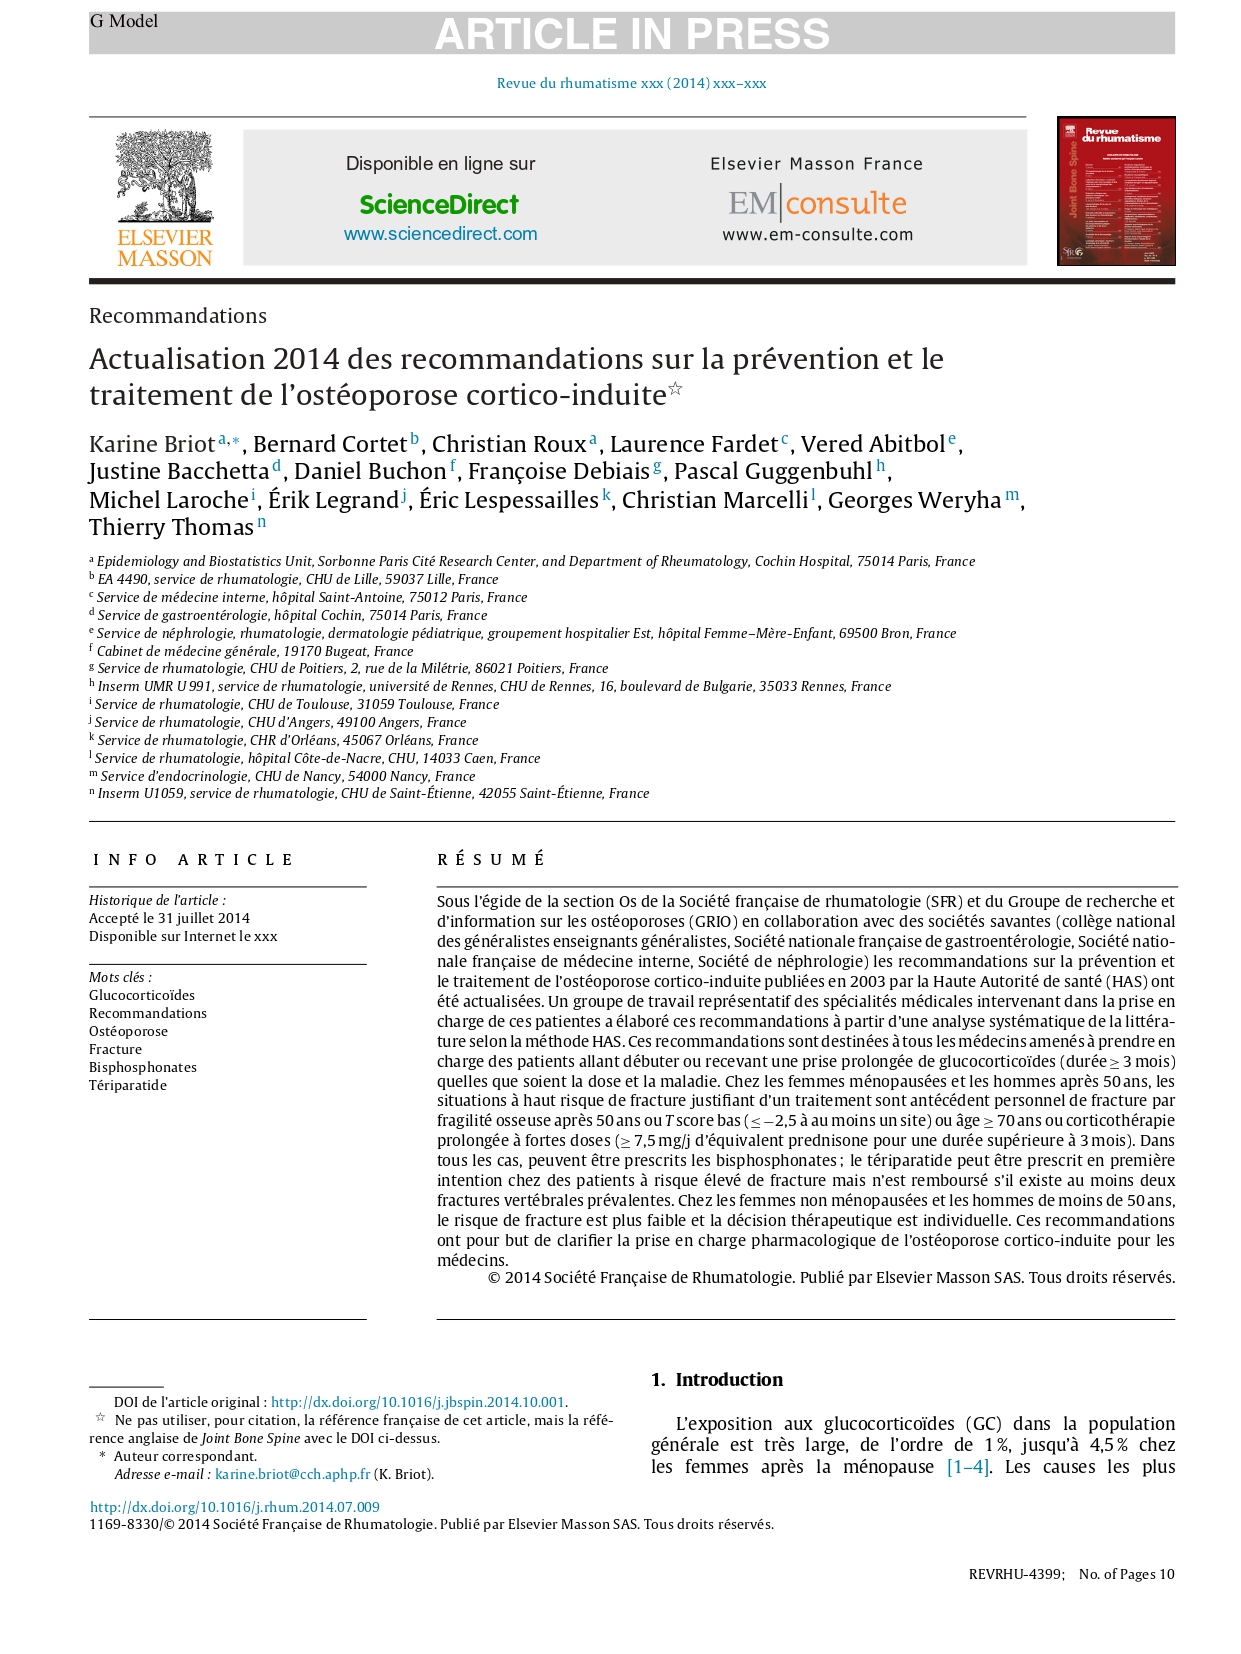 Actualisation 2014 des recommandations sur la prévention et le traitement de l’ostéoporose cortico-induite (GRIO 2014)